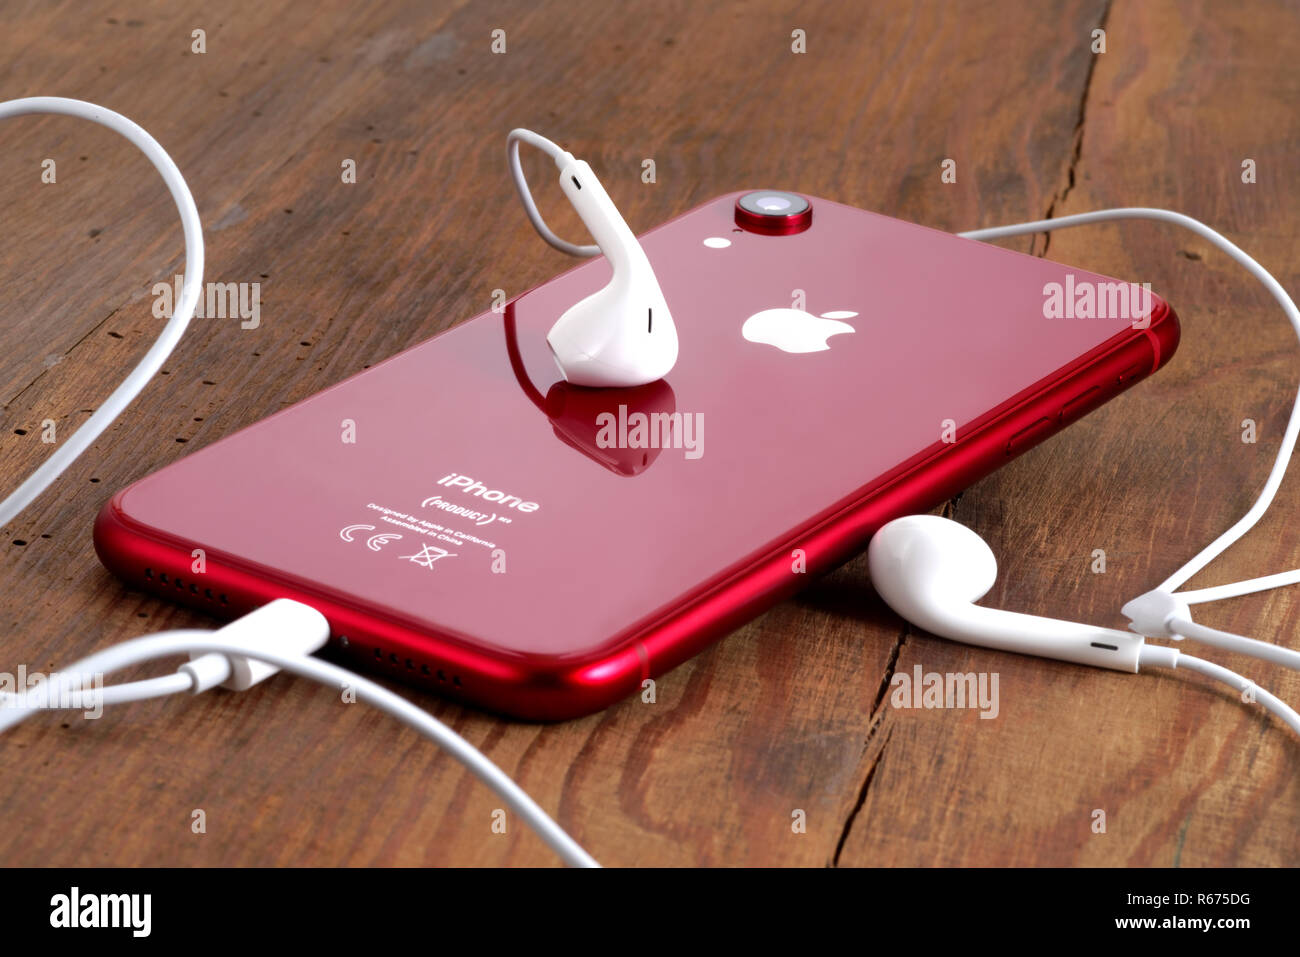 Koszalin, Pologne - Décembre 04, 2018 : l'iPhone sur une XR rouge table en bois avec des écouteurs blancs. L'iPhone XR est smart phone avec écran tactile multi produ Banque D'Images